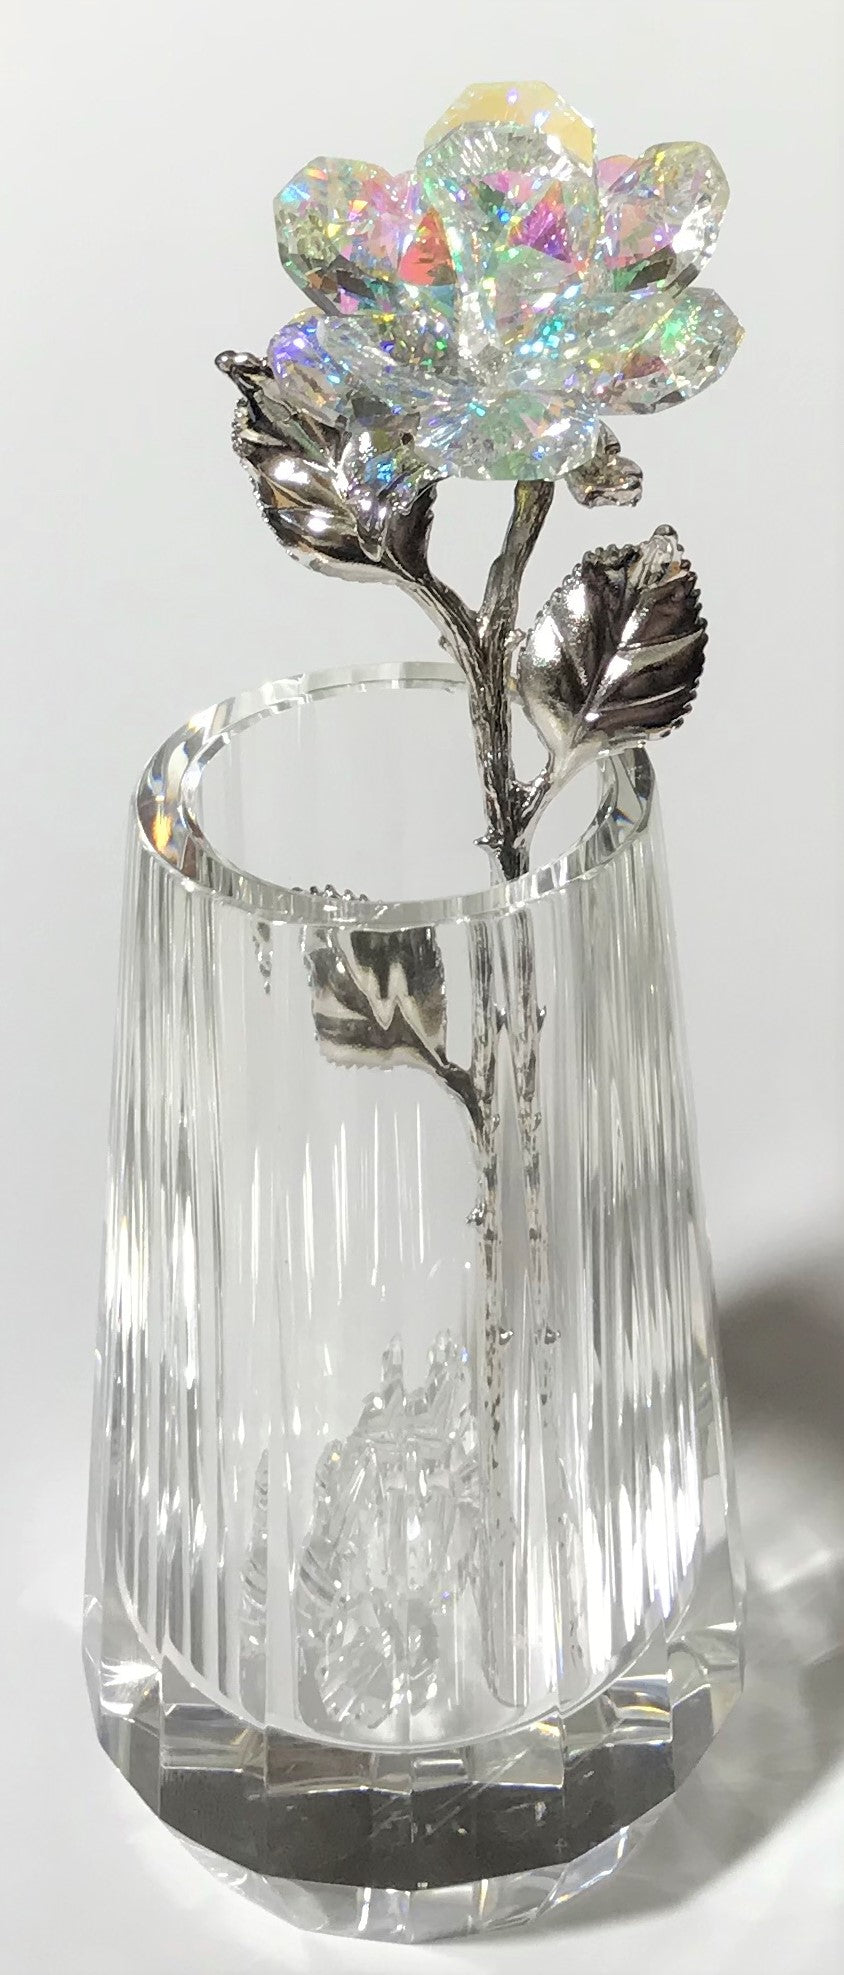 Sparkling AB Crystal Rose In Crystal Vase - AB Crystal Flower In Crystal Vase - Wedding Favor